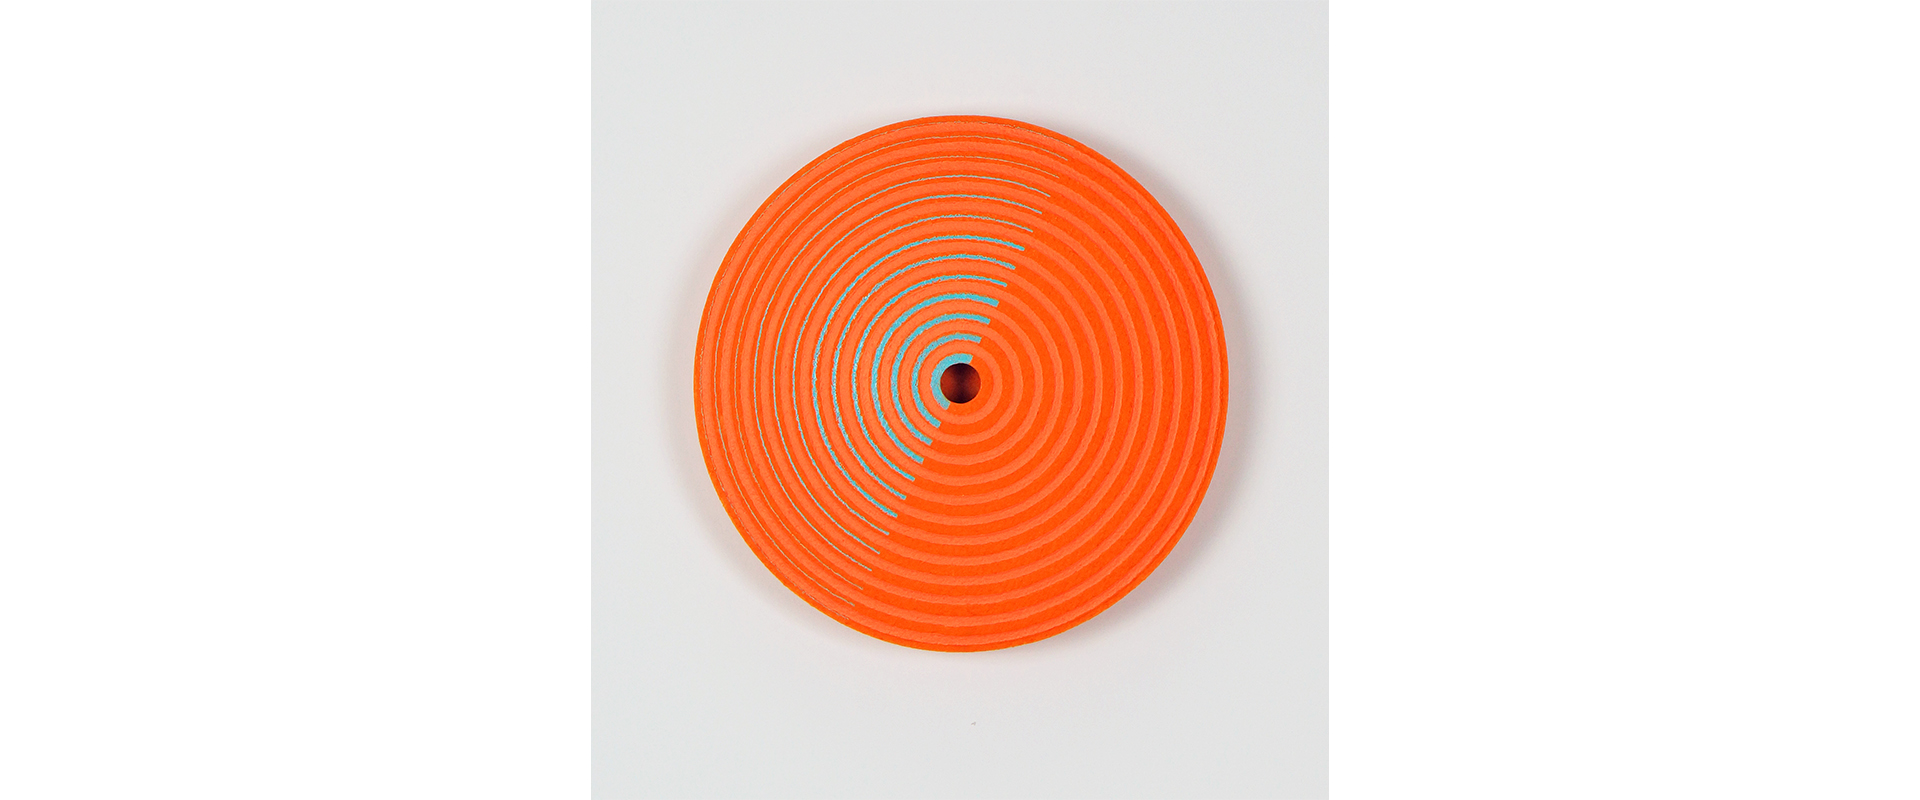 Reinhard Wöllmer, Struktur radial (orange, leuchtrosa, blau) – 2022, Papiermaché, eingefärbt, Acryl, Farbstift, D. 29 x 3,5 cm, 8/9 Ex.